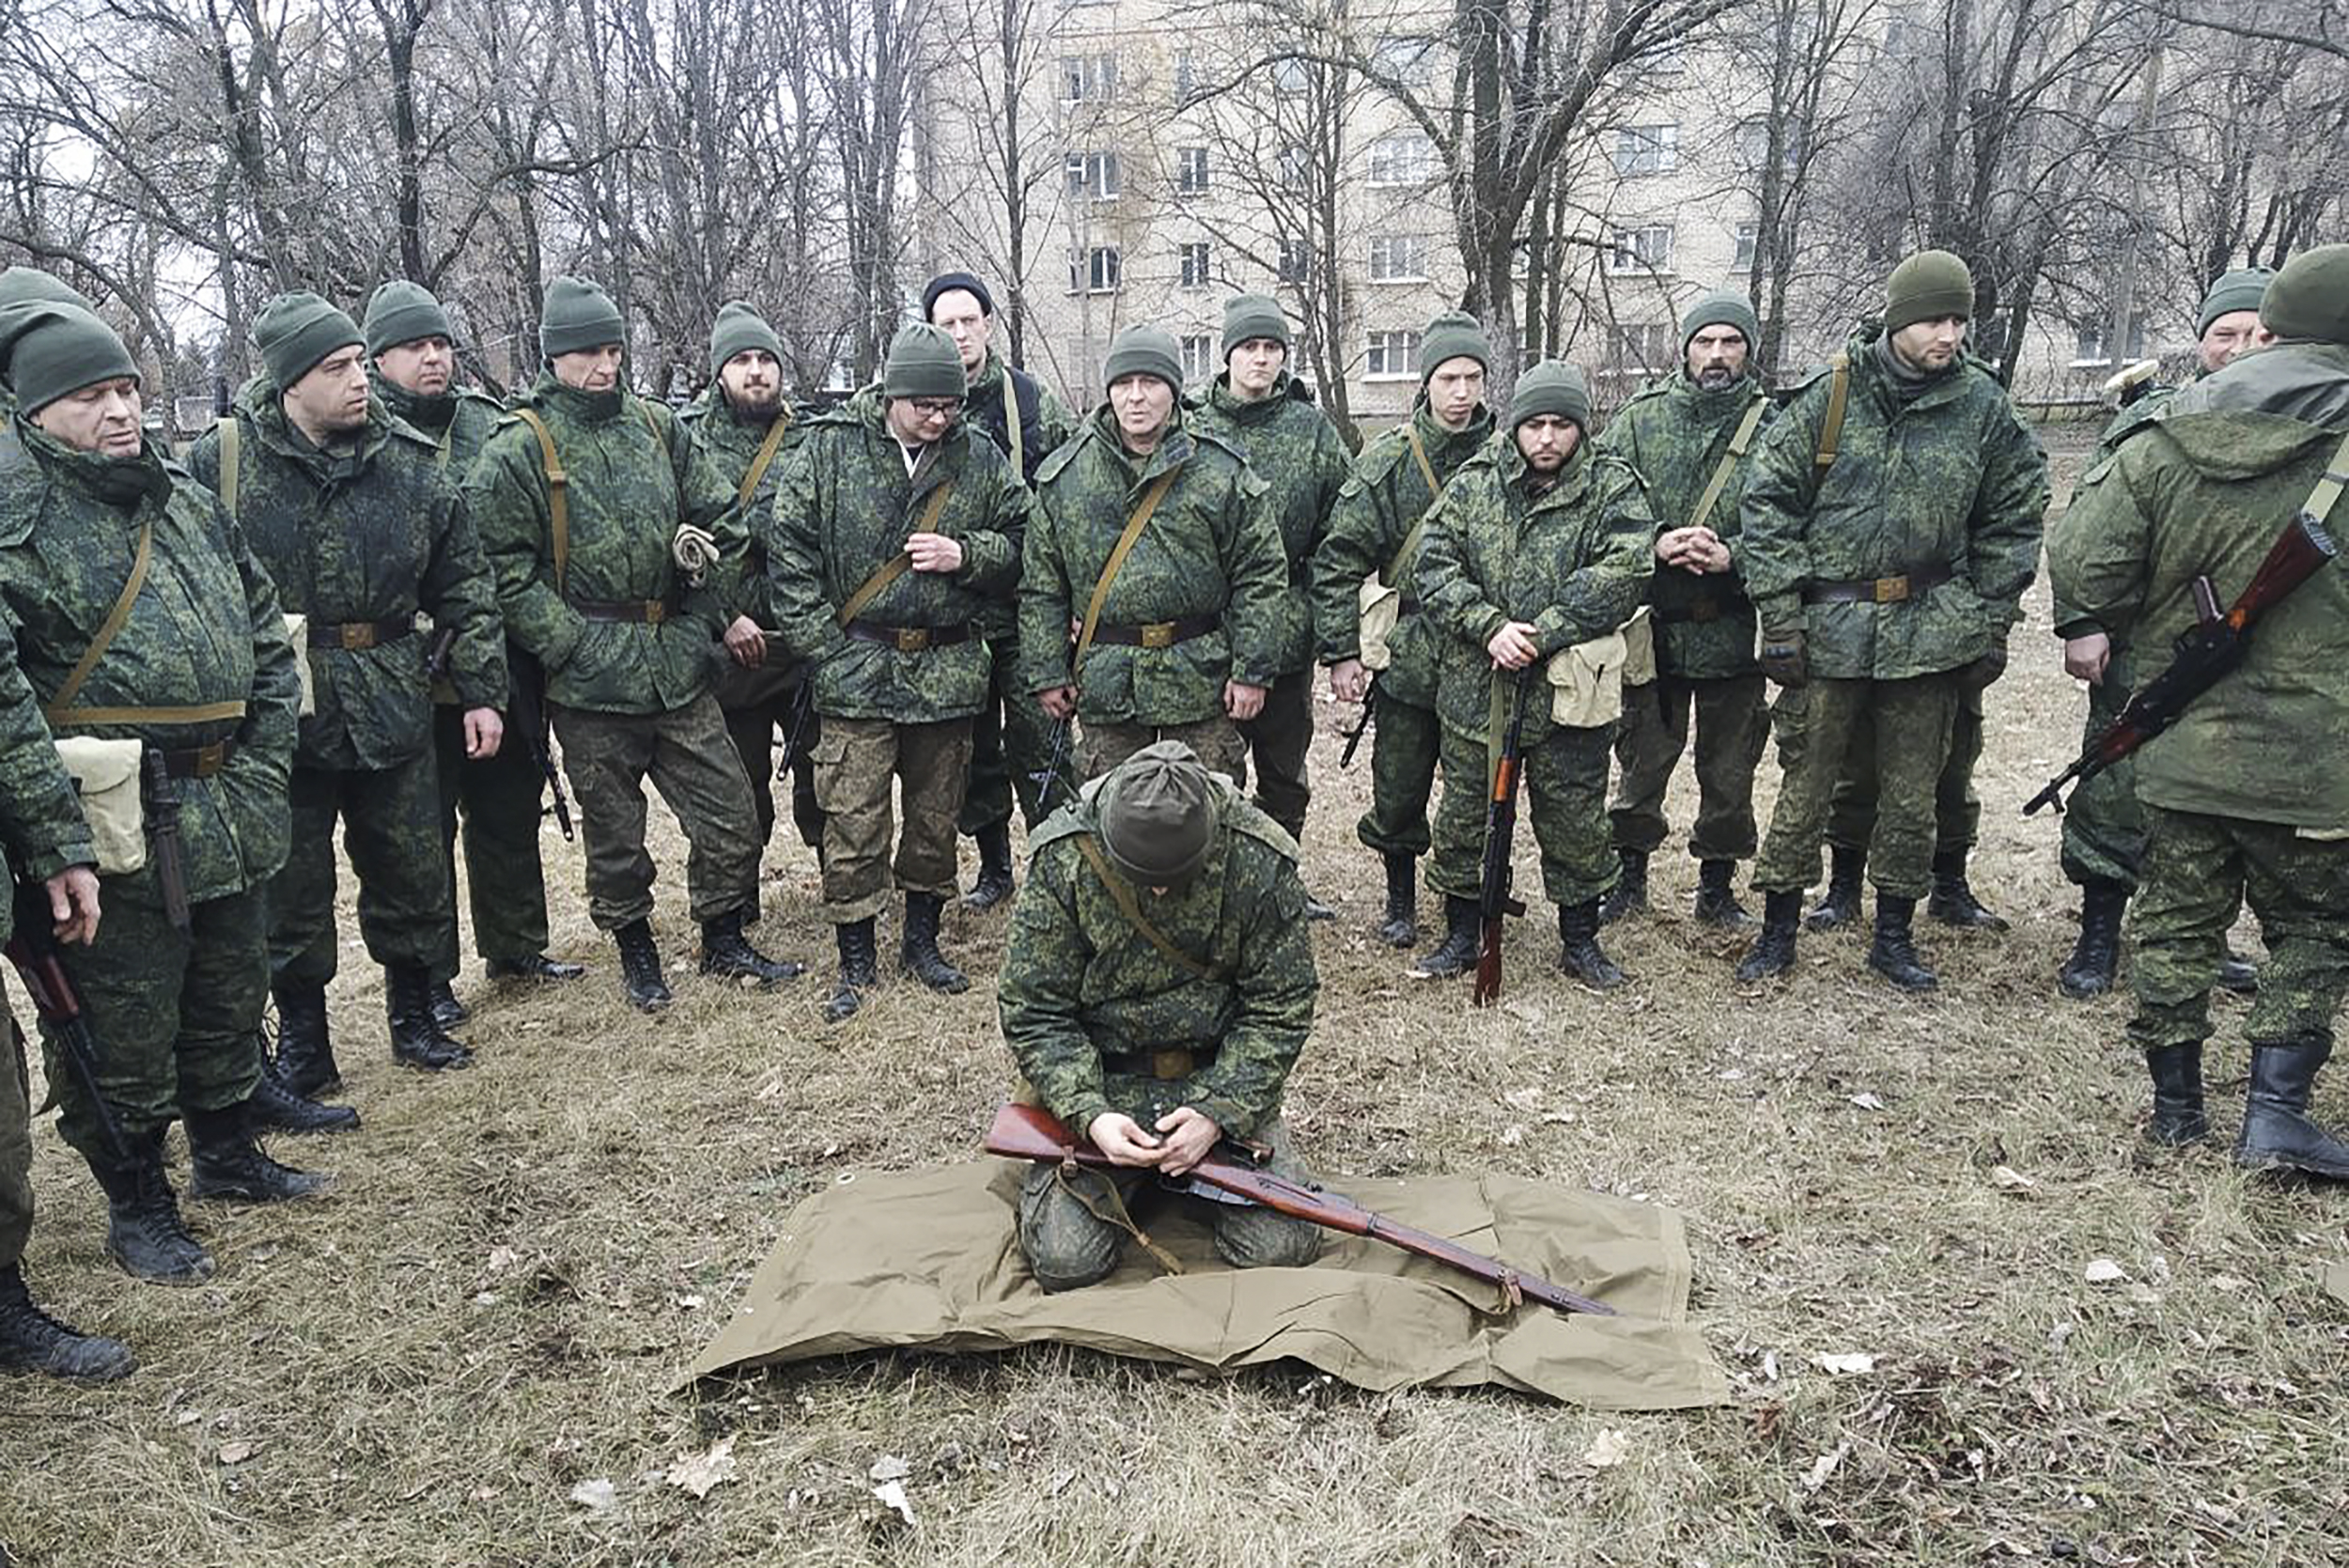 Мобилизованные солдаты готовятся присоединиться к ополчению Луганской народной республики. Некоторые из них обучаются обращению с оружием. Большинство новобранцев - добровольцы, заявляют в ЛНР. Фото Mikhail Skuratov/TASS/Scanpix/LETA